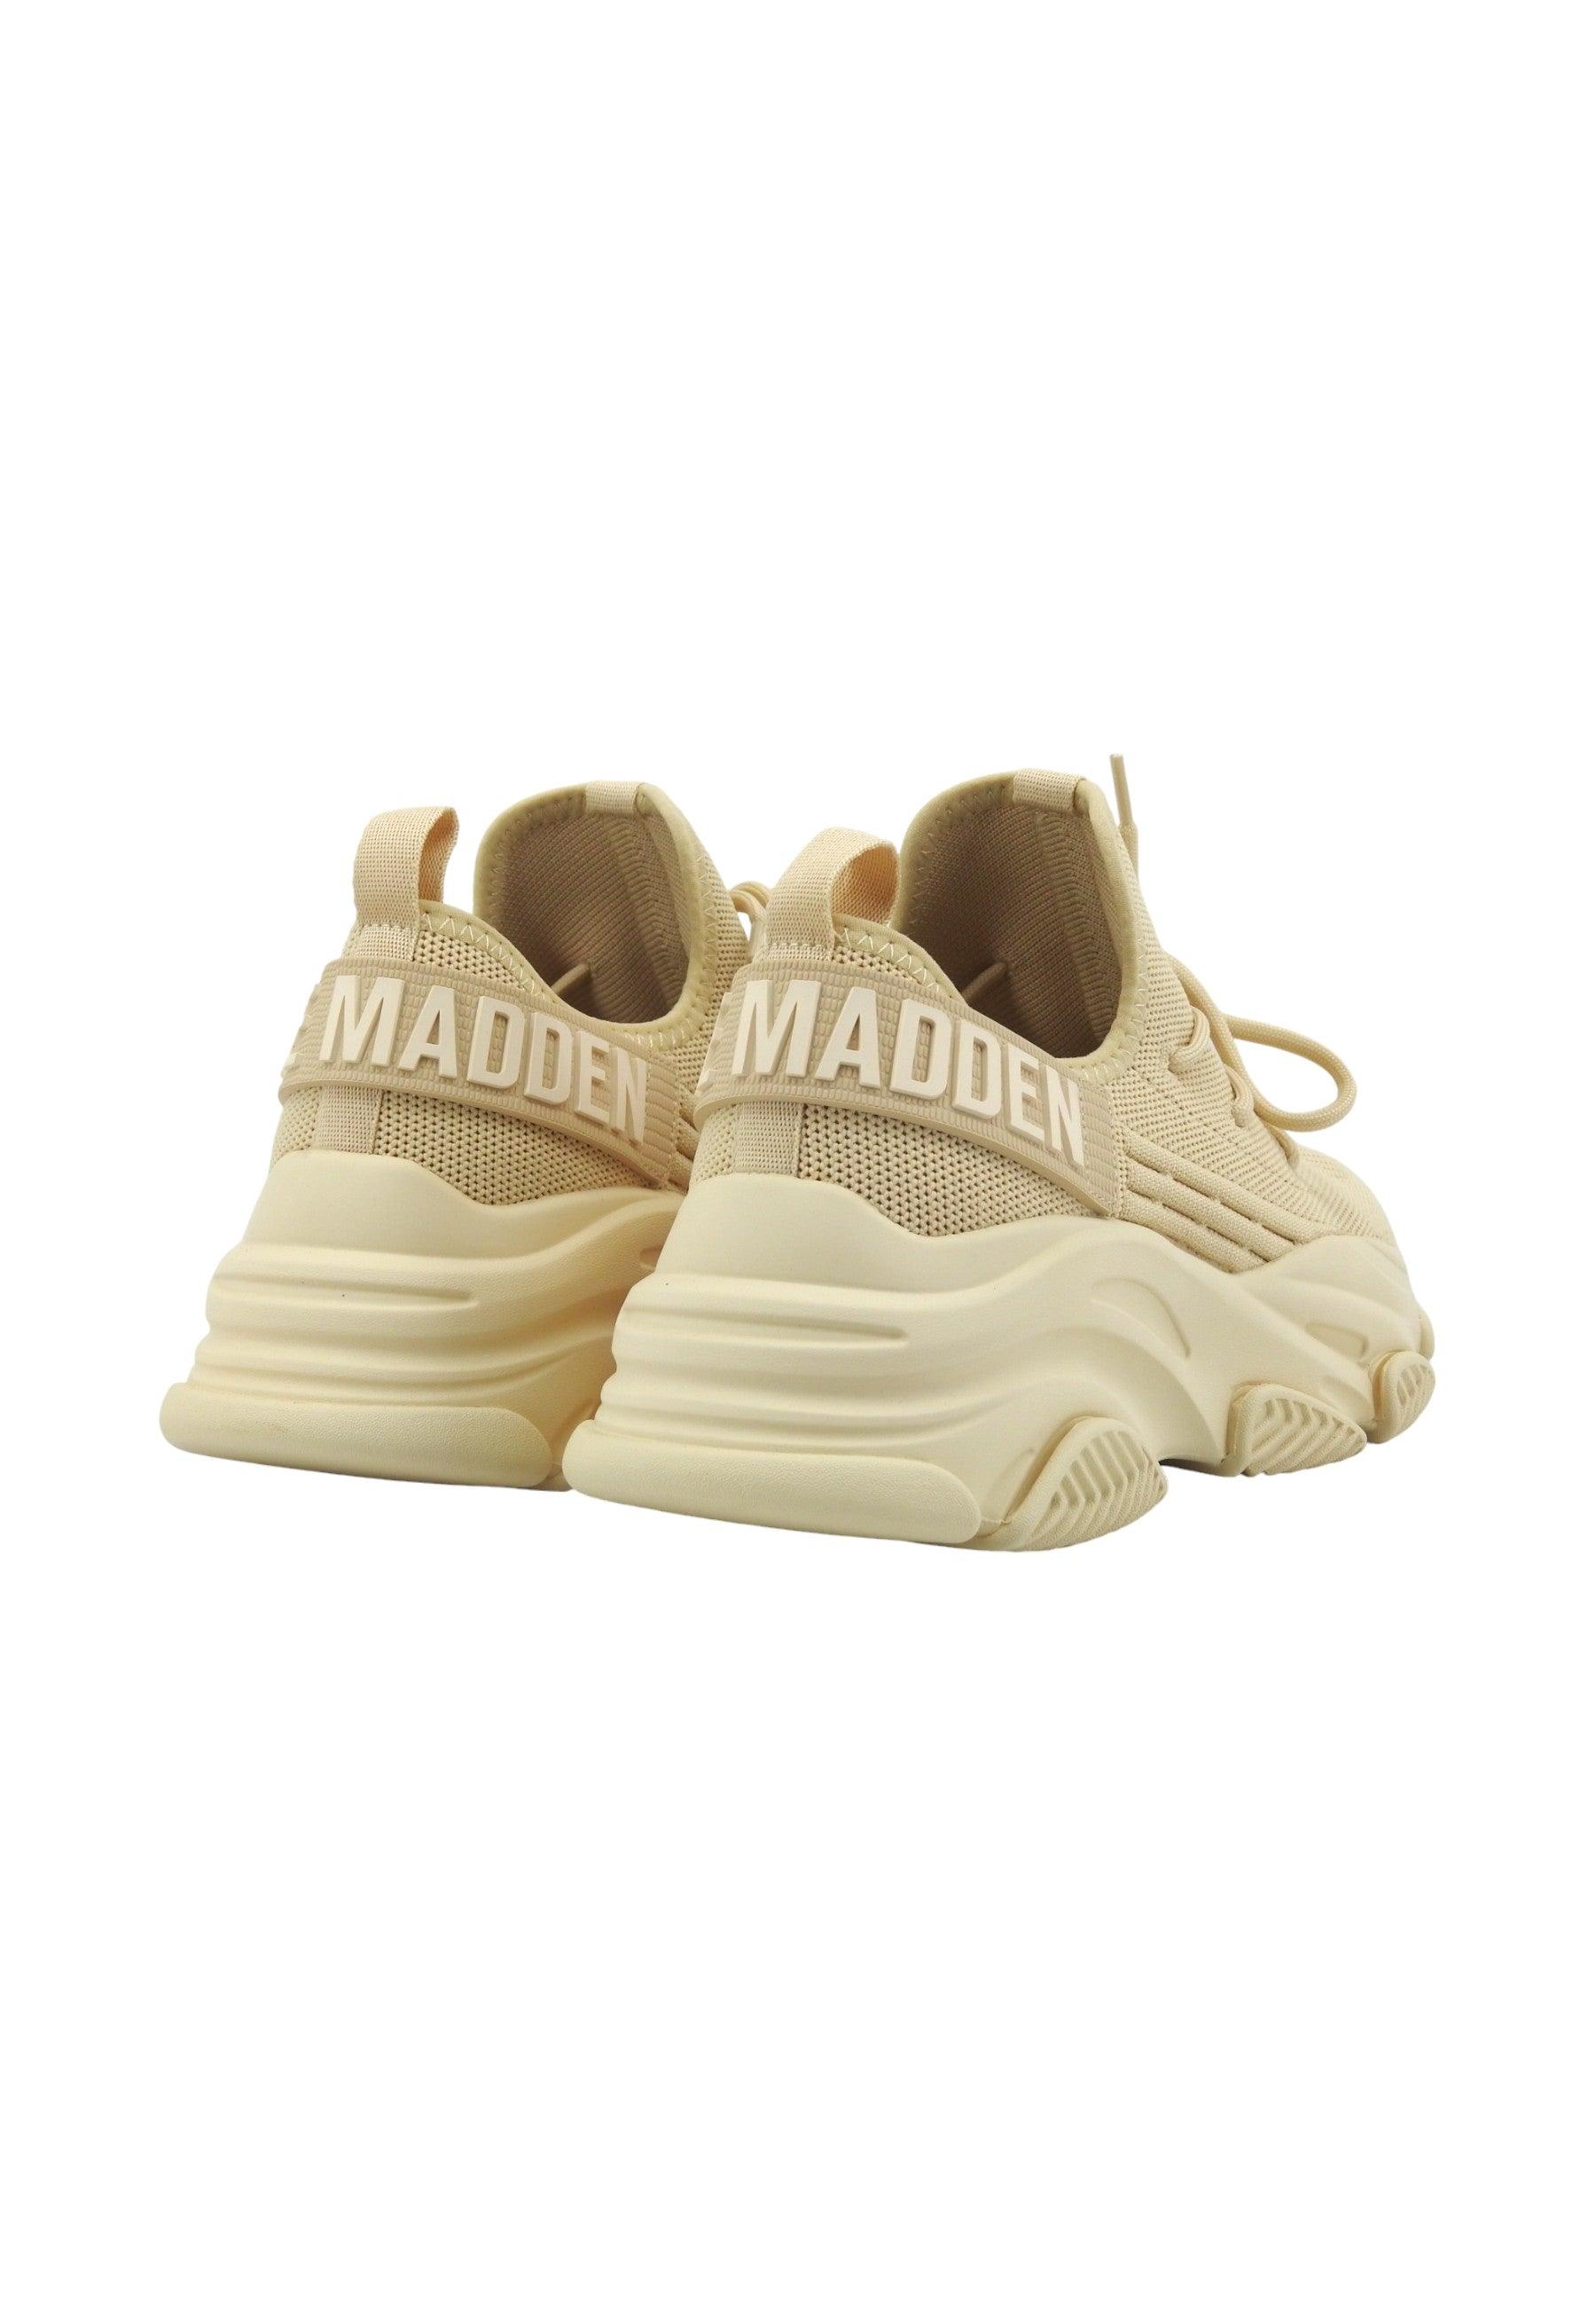 STEVE MADDEN Protege Sneaker Donna Off White Beige PROT04S1 - Sandrini Calzature e Abbigliamento